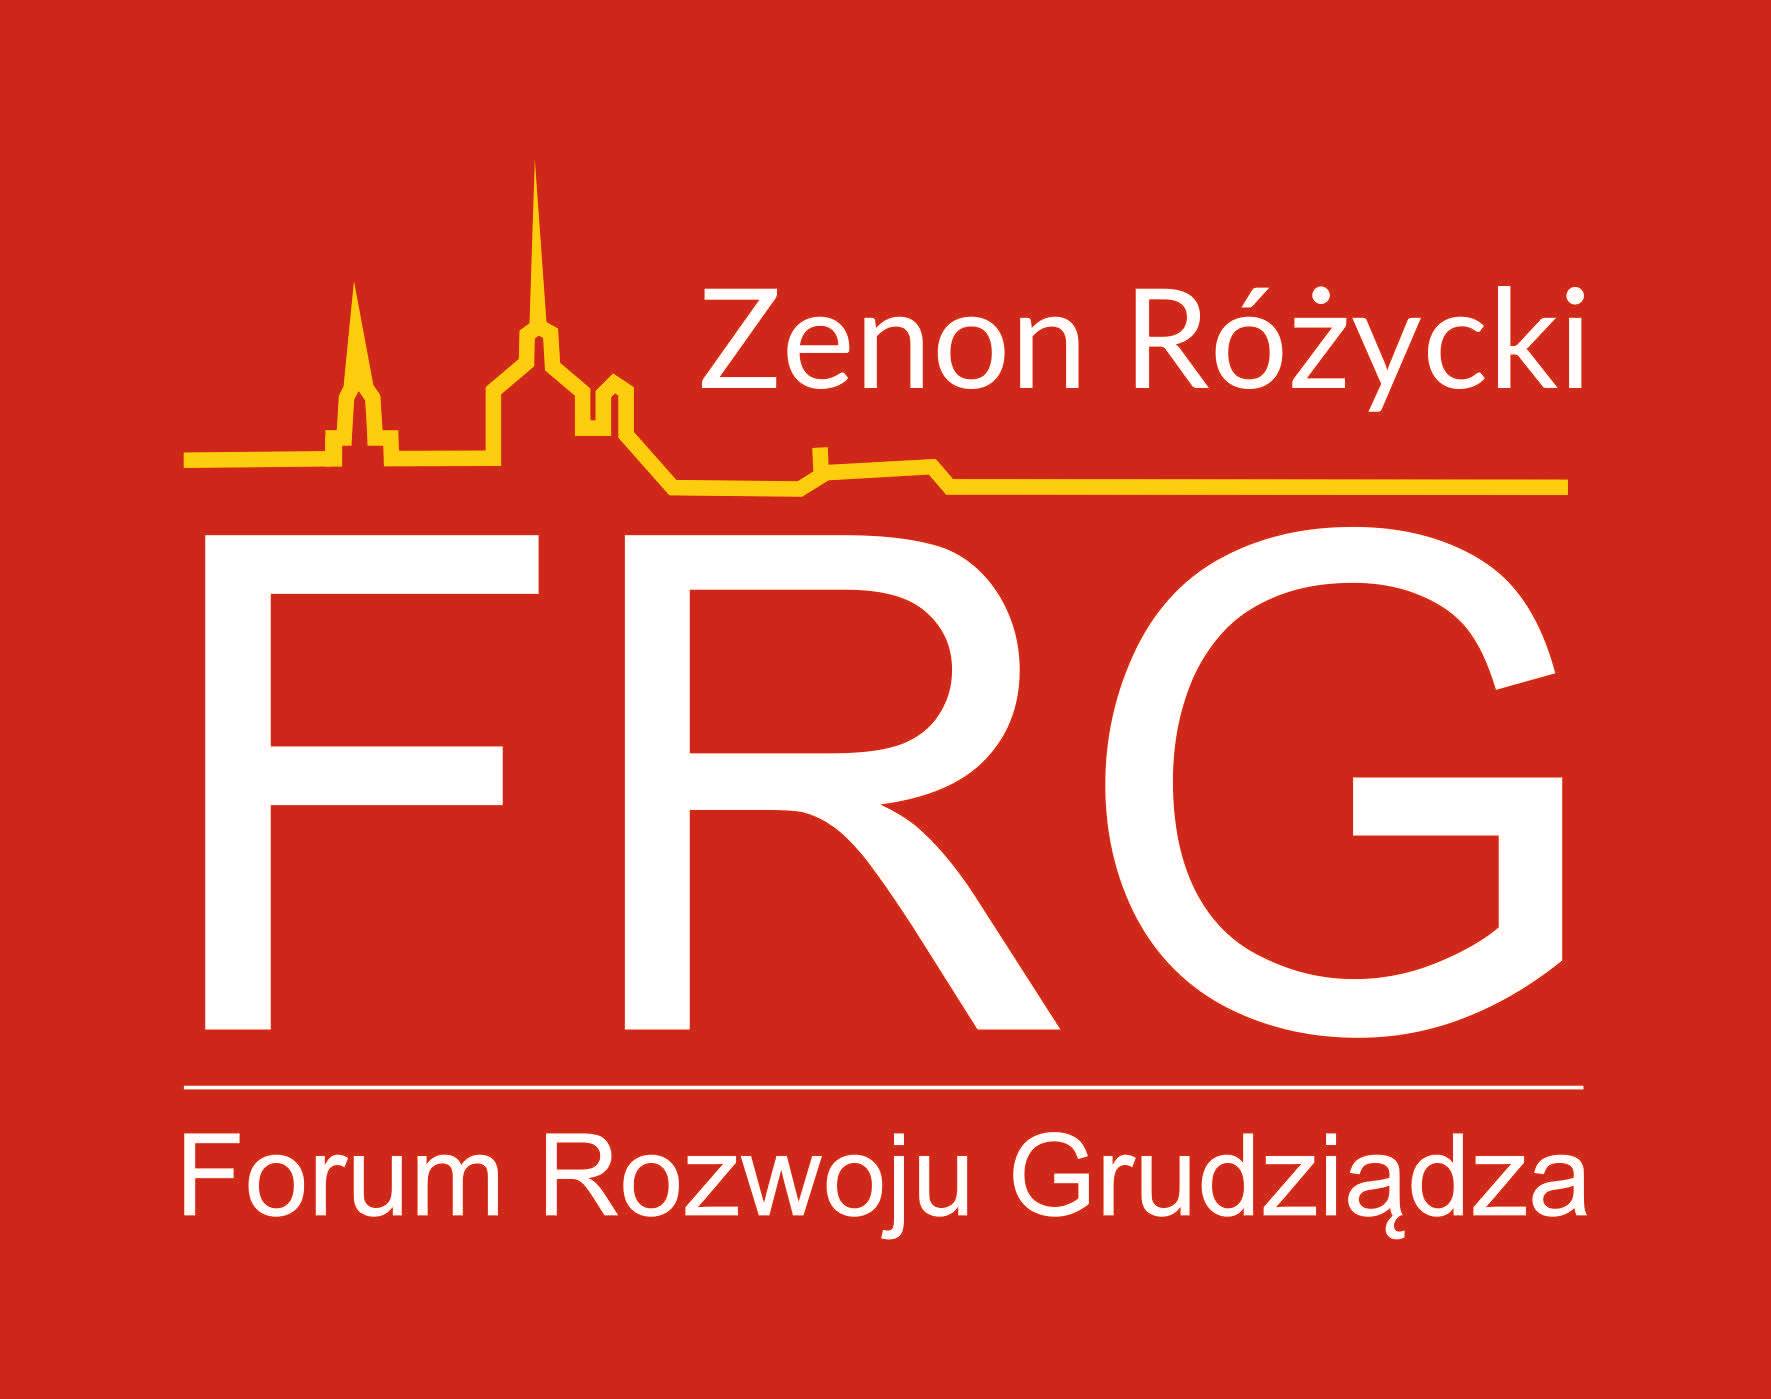 Forum Rozwoju Grudziądza Zenon Różycki